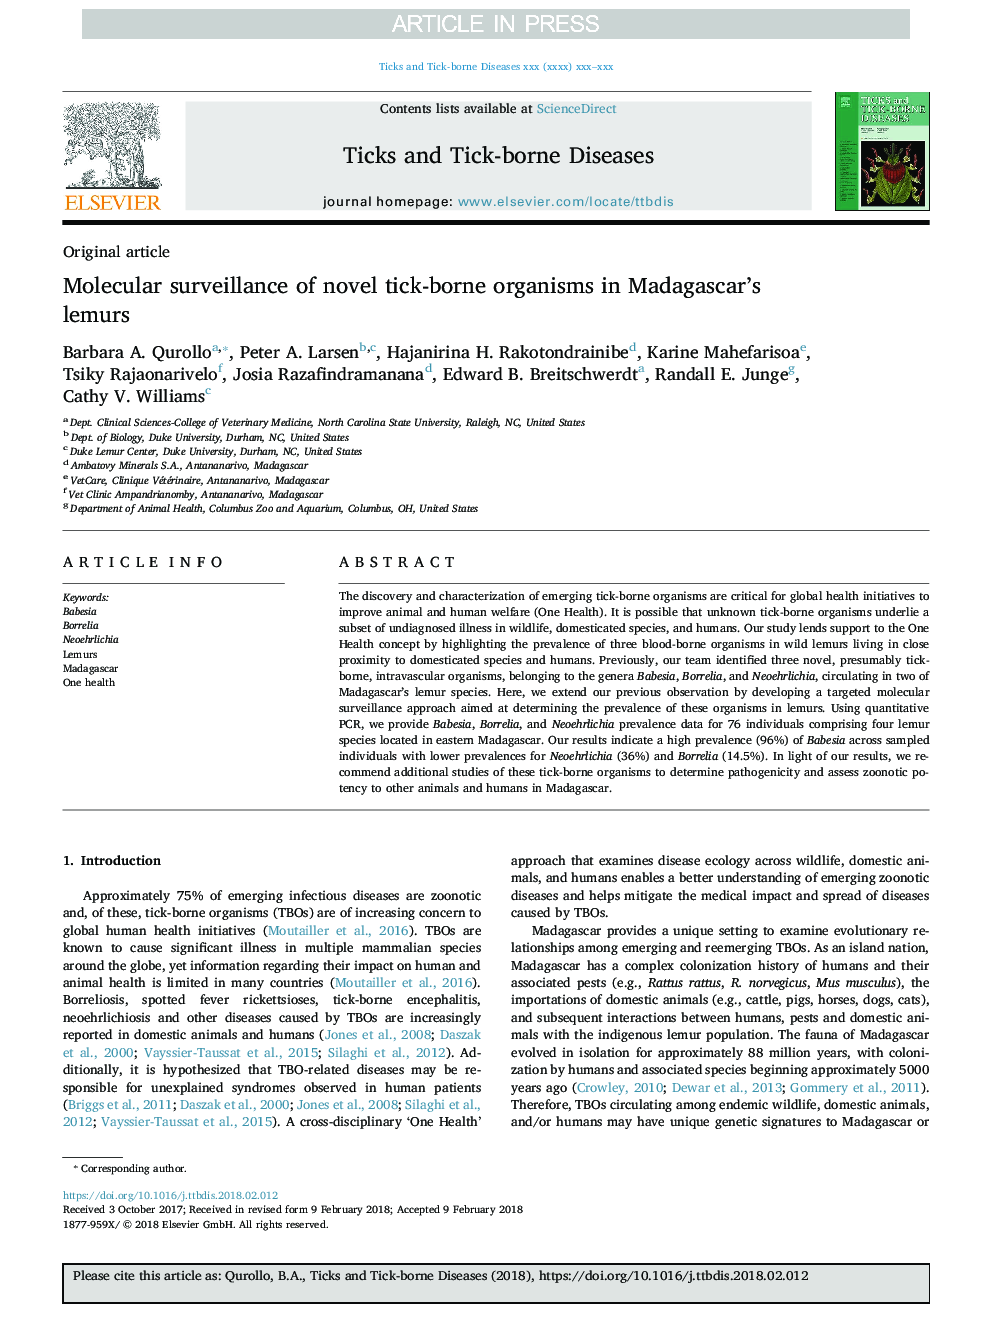 نظارت مولکولی بر ارگانیسم های جدید تیکه در لومورهای ماداگاسکار 